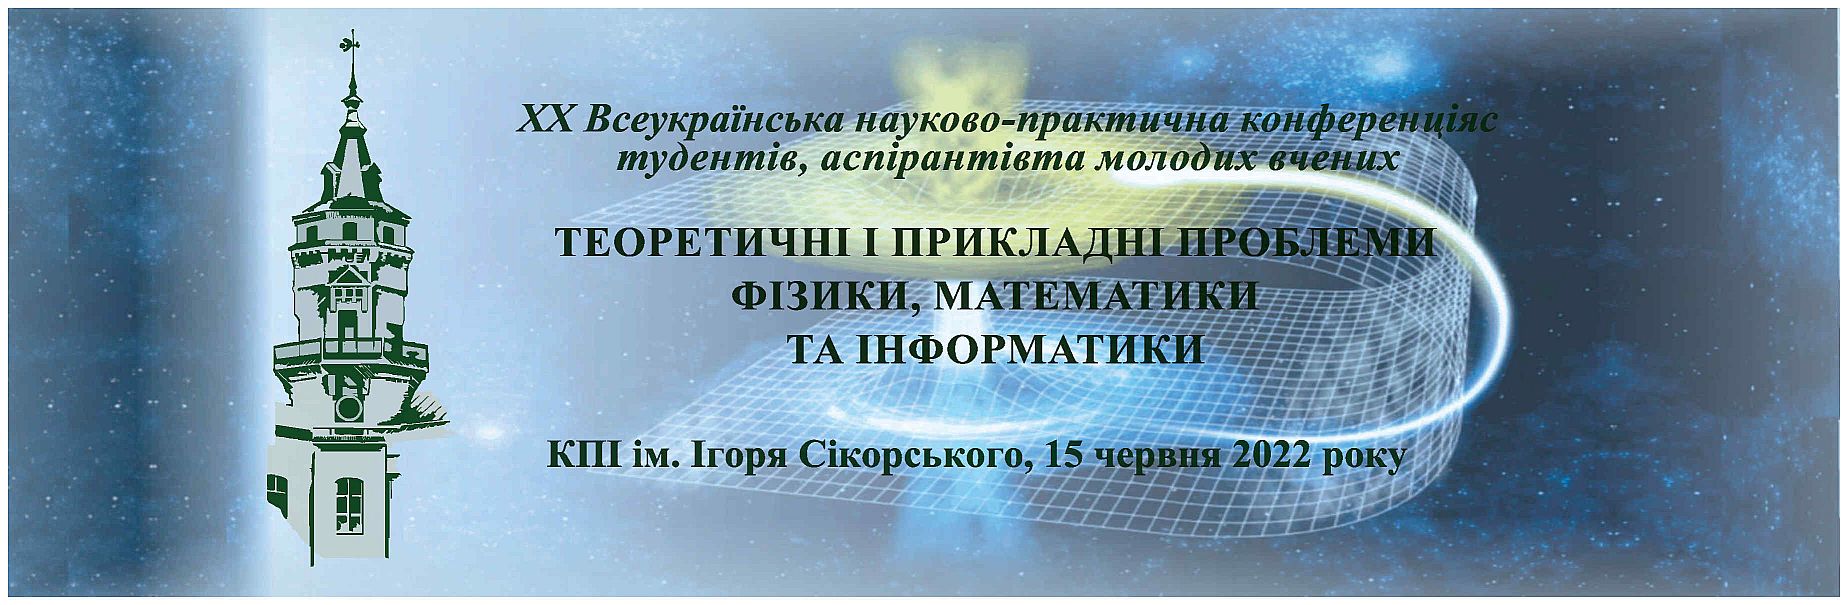 XX Всеукраїнська науково-практична конференція студентів, аспірантів та молодих вчених